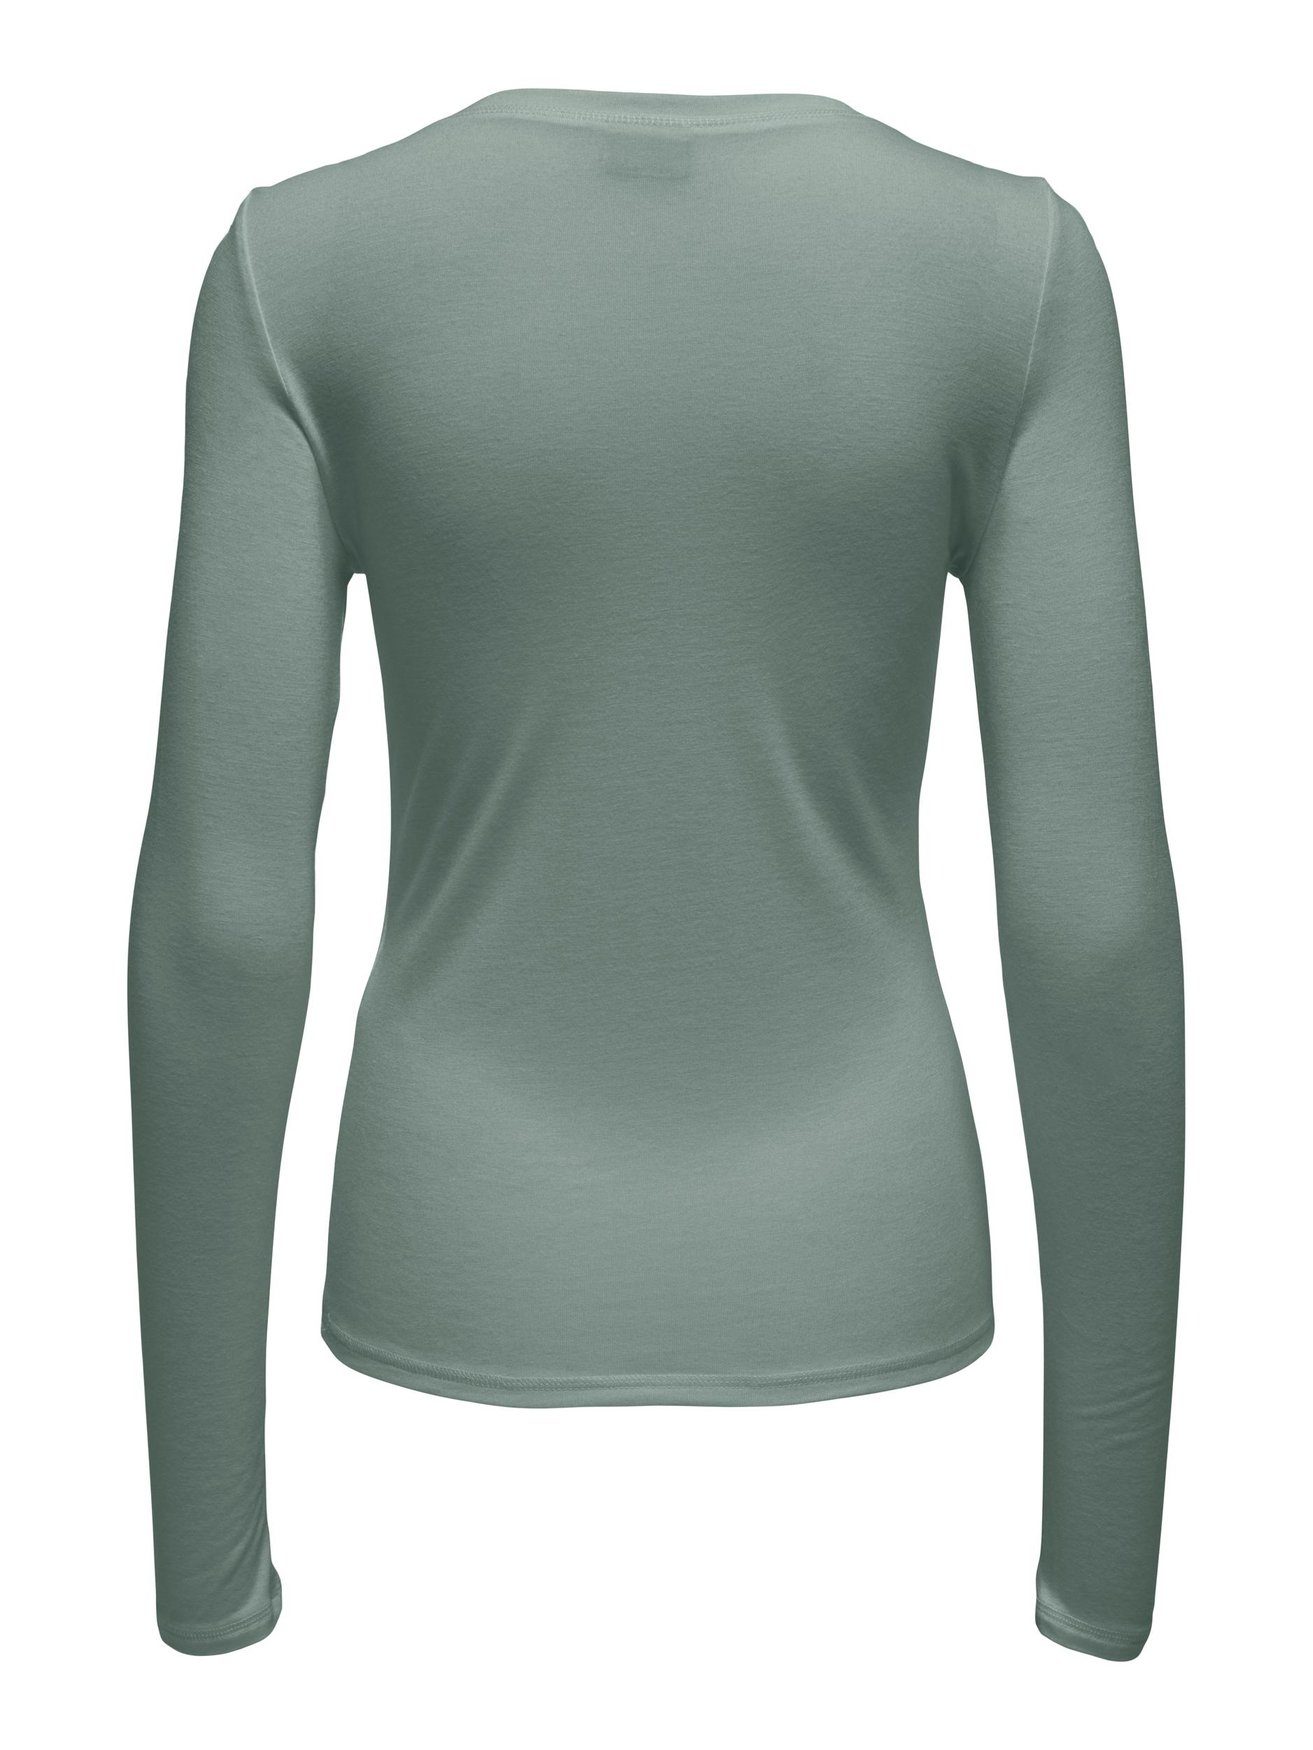 Dünner Grün T-Shirt 6403 Pullover de Basic JDYSUMA JACQUELINE in YONG Langarm Shirt